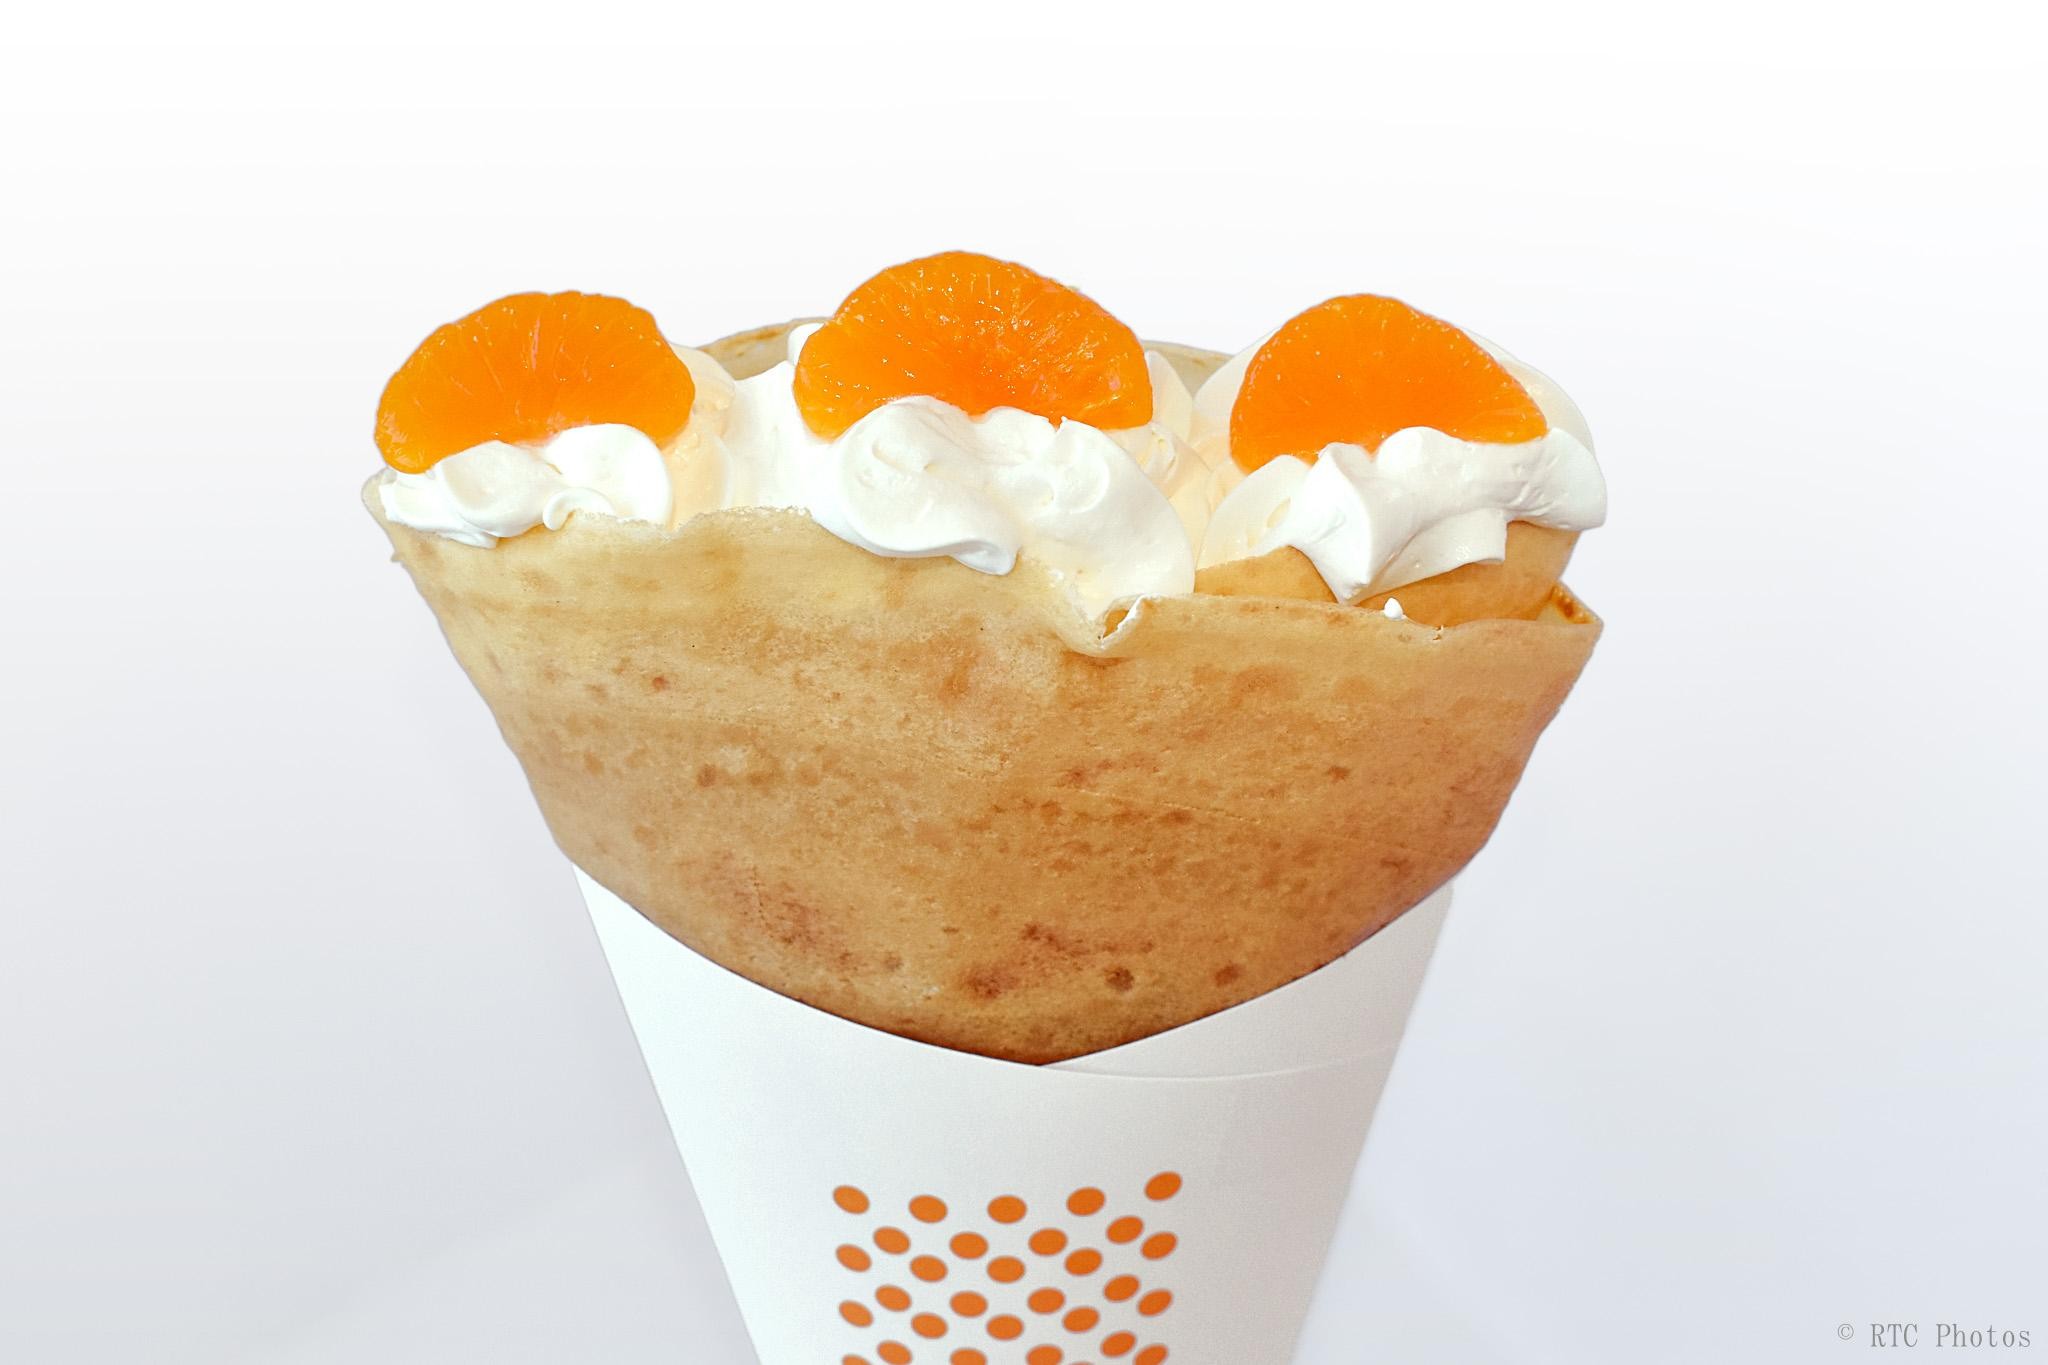 15. Mandarin orange & whipped cream